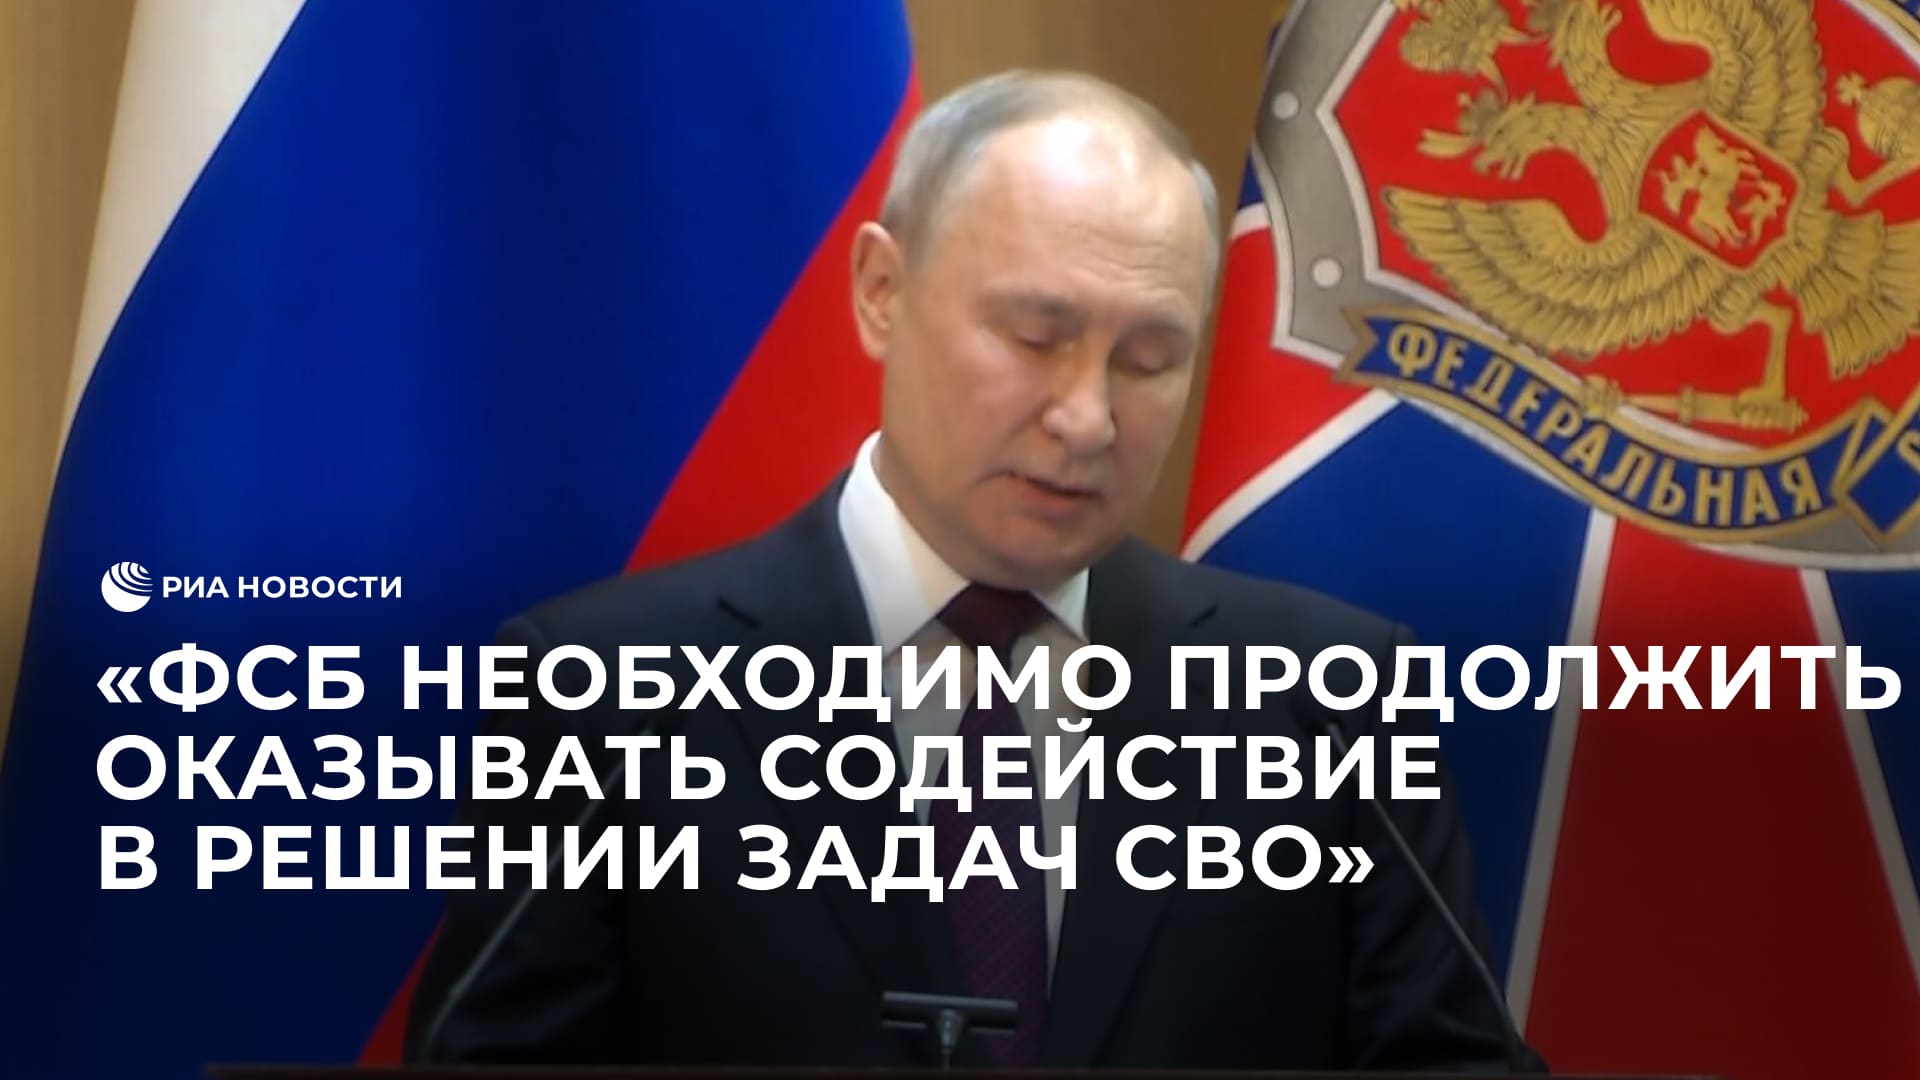 ФСБ необходимо продолжить оказывать содействие в решении задач СВО, заявил Путин